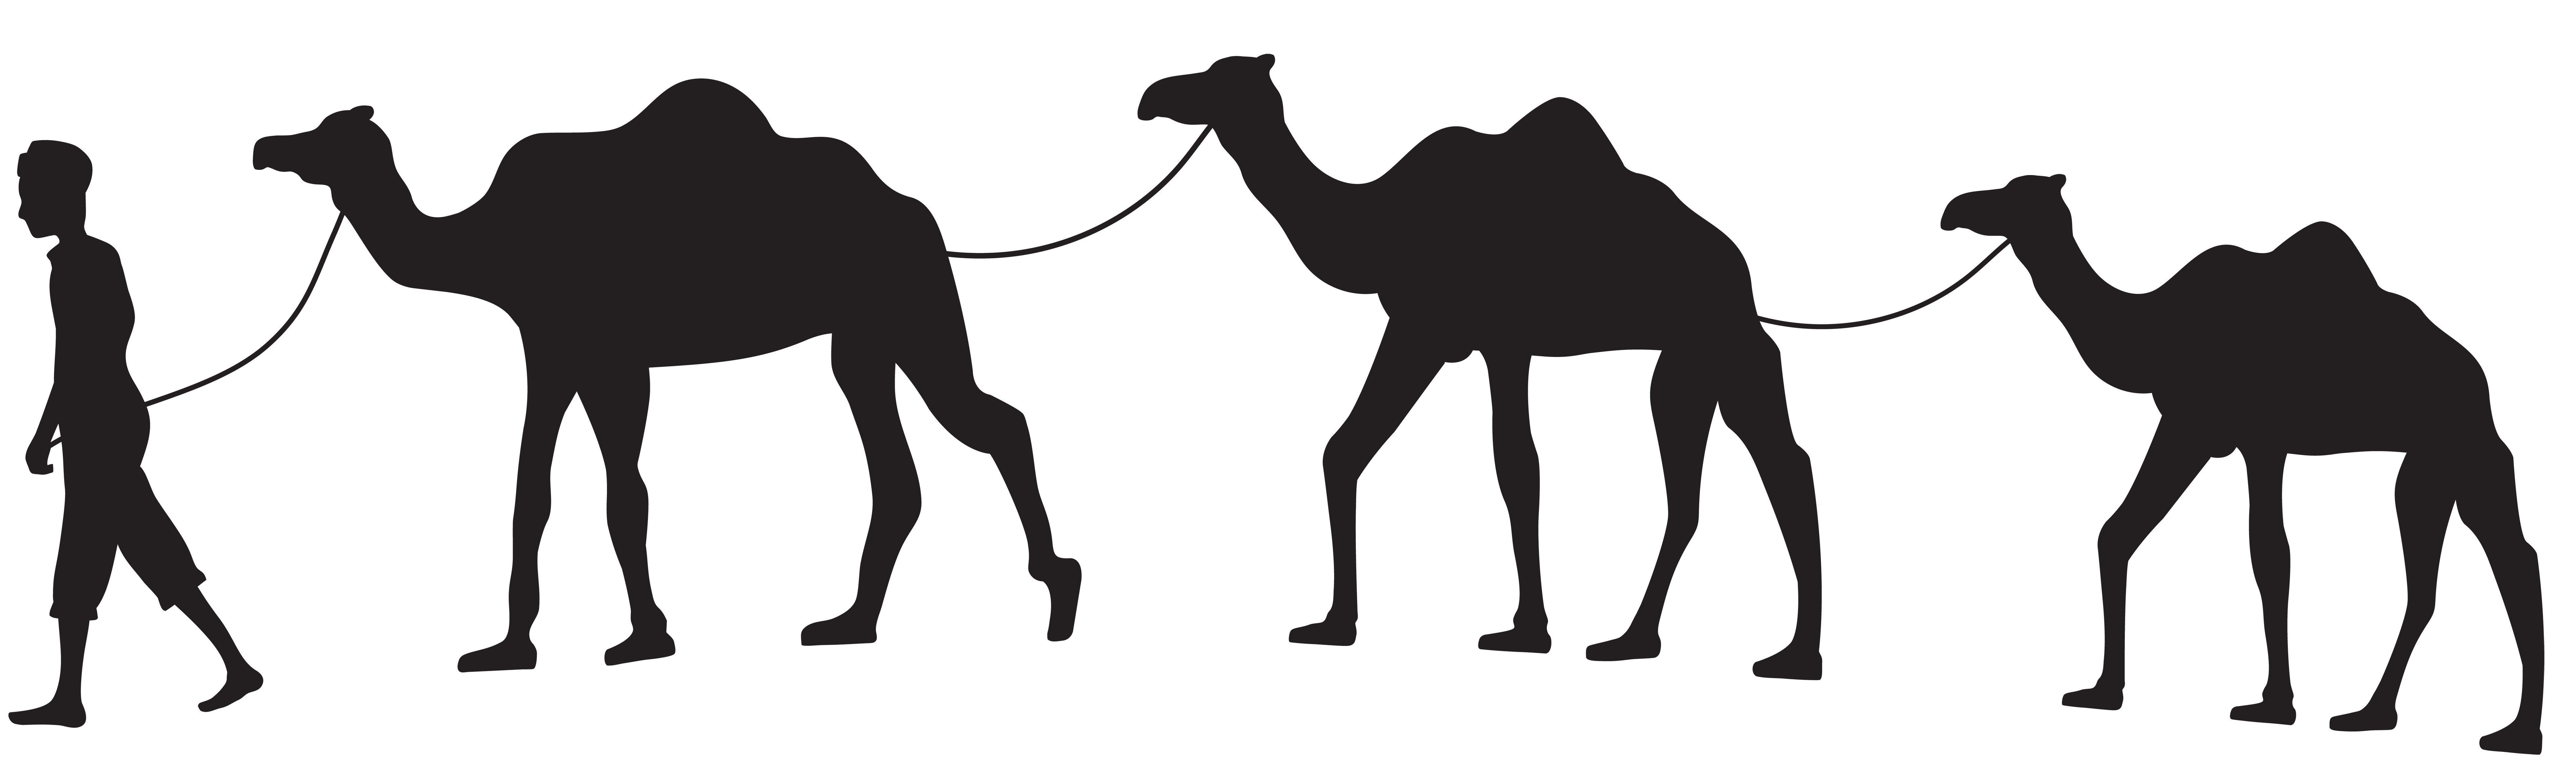 Camel clipart transparent background. Caravan silhouette png clip